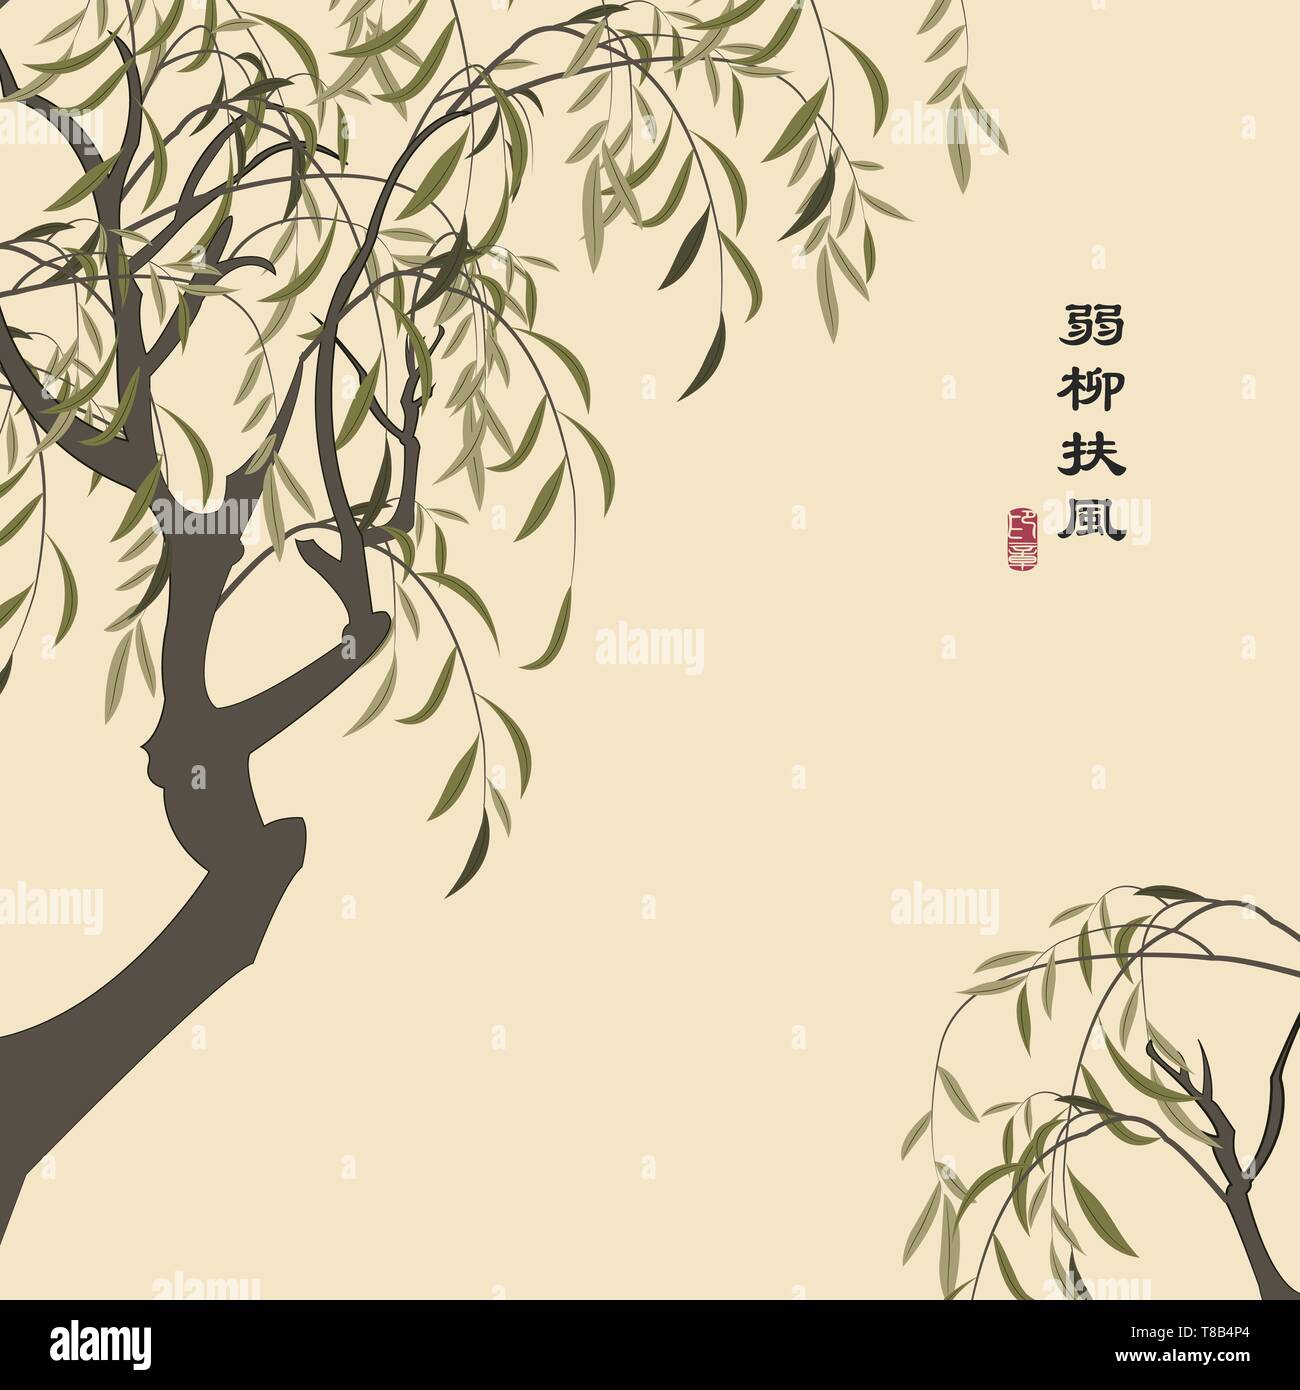 Retrò colorato stile cinese illustrazione vettoriale elegante willow tree. La traduzione per la parola cinese : Willow ramo tremante nel vento. Illustrazione Vettoriale